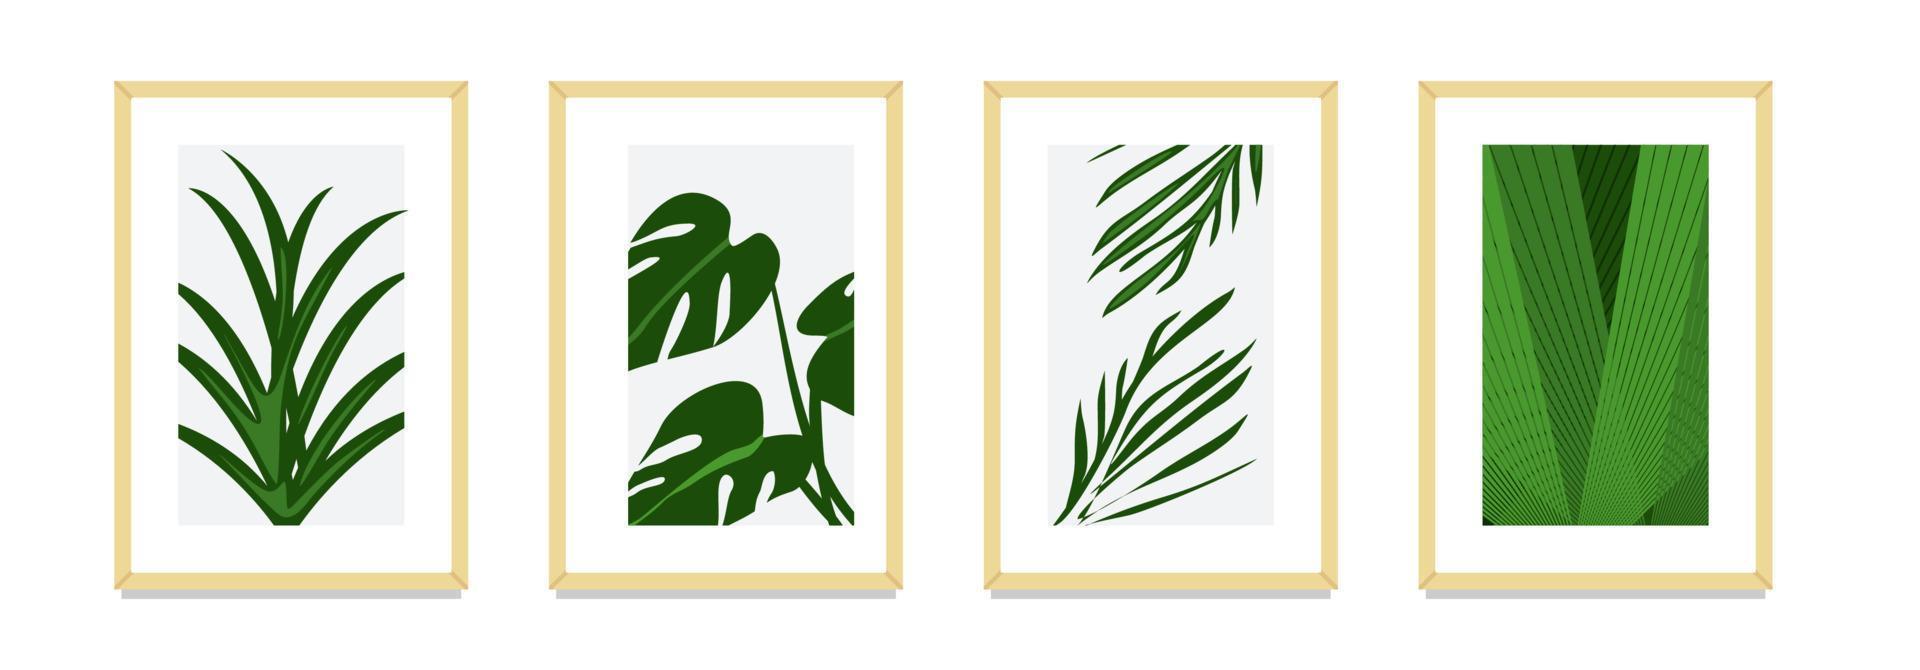 grüner tropischer blattwandkunstplakatdekorations-illustrationsvektor. Monstera und andere natürliche Pflanzenkunstillustrationen für Tapeten. Wandkunstdesign mit grüner Blätterparadies-Atmosphäre vektor